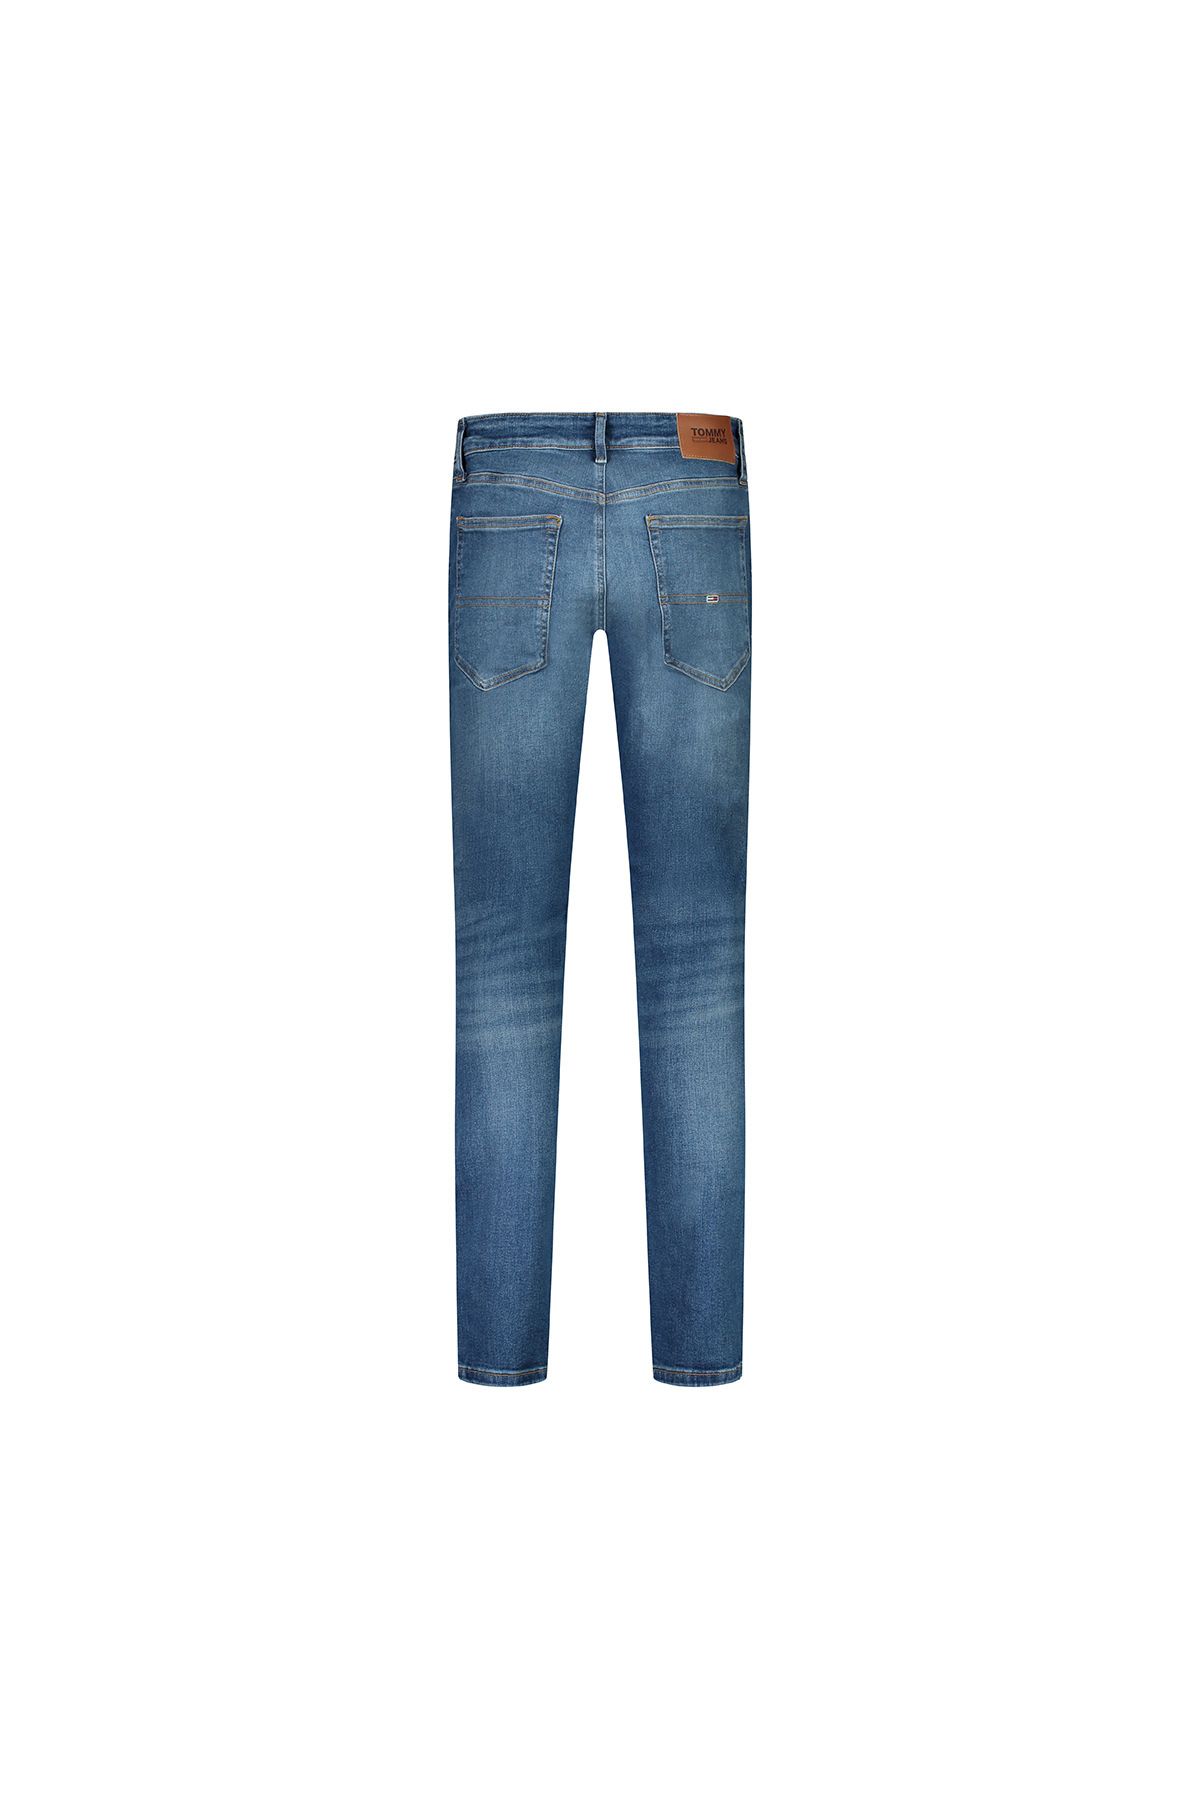 Tommy Jeans جین مردانه (کد مدل: DM0DM16636)